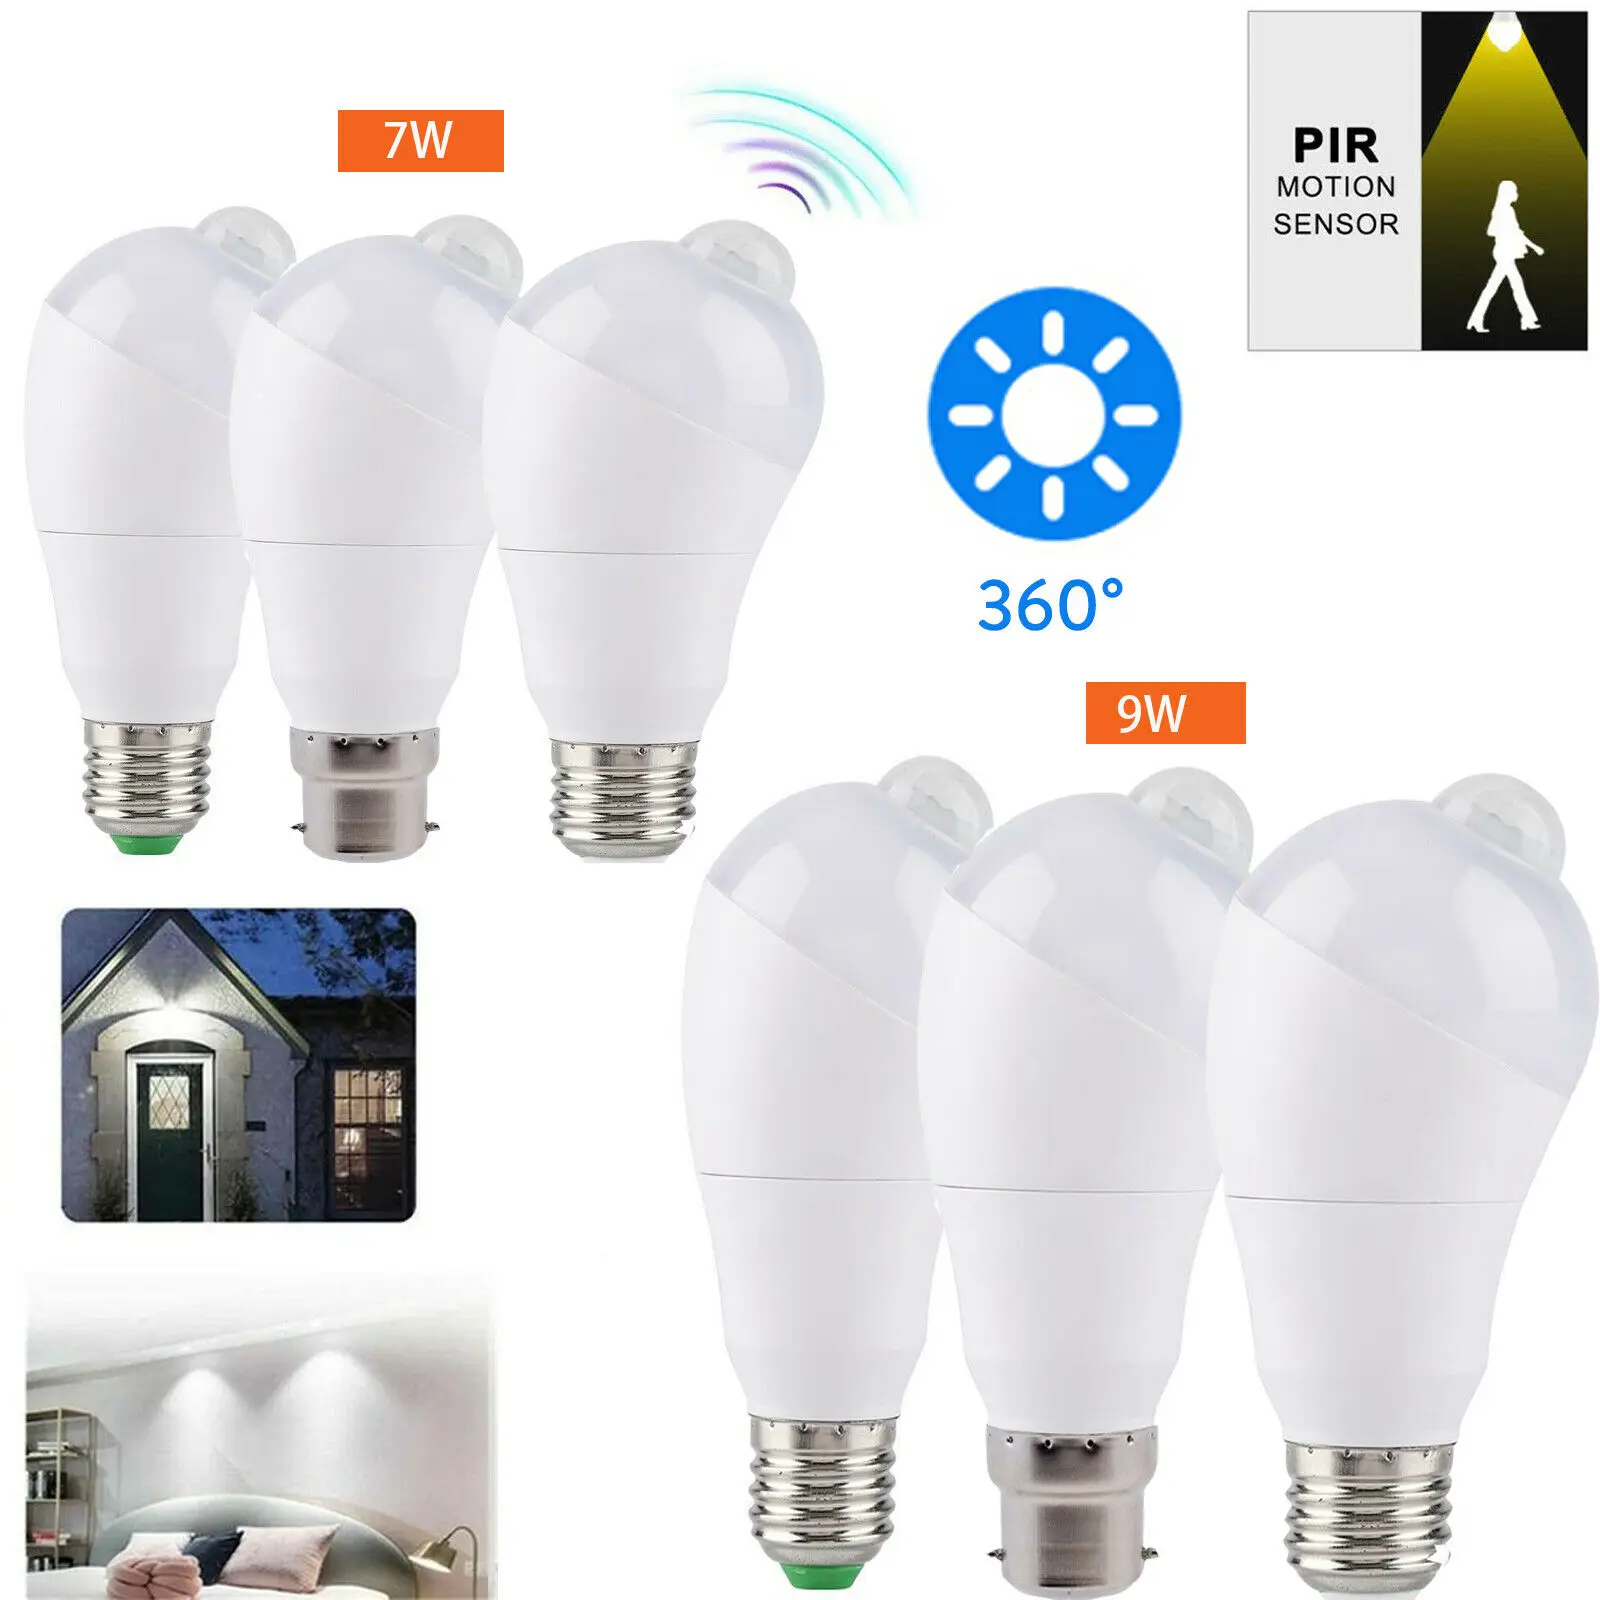 

PIR LED Motion Sensor Light Bulb 5W 7W E27 B22 Rotate Infrared For Corridor Cold Warm White Home Light Super Bright Lamp Bulb